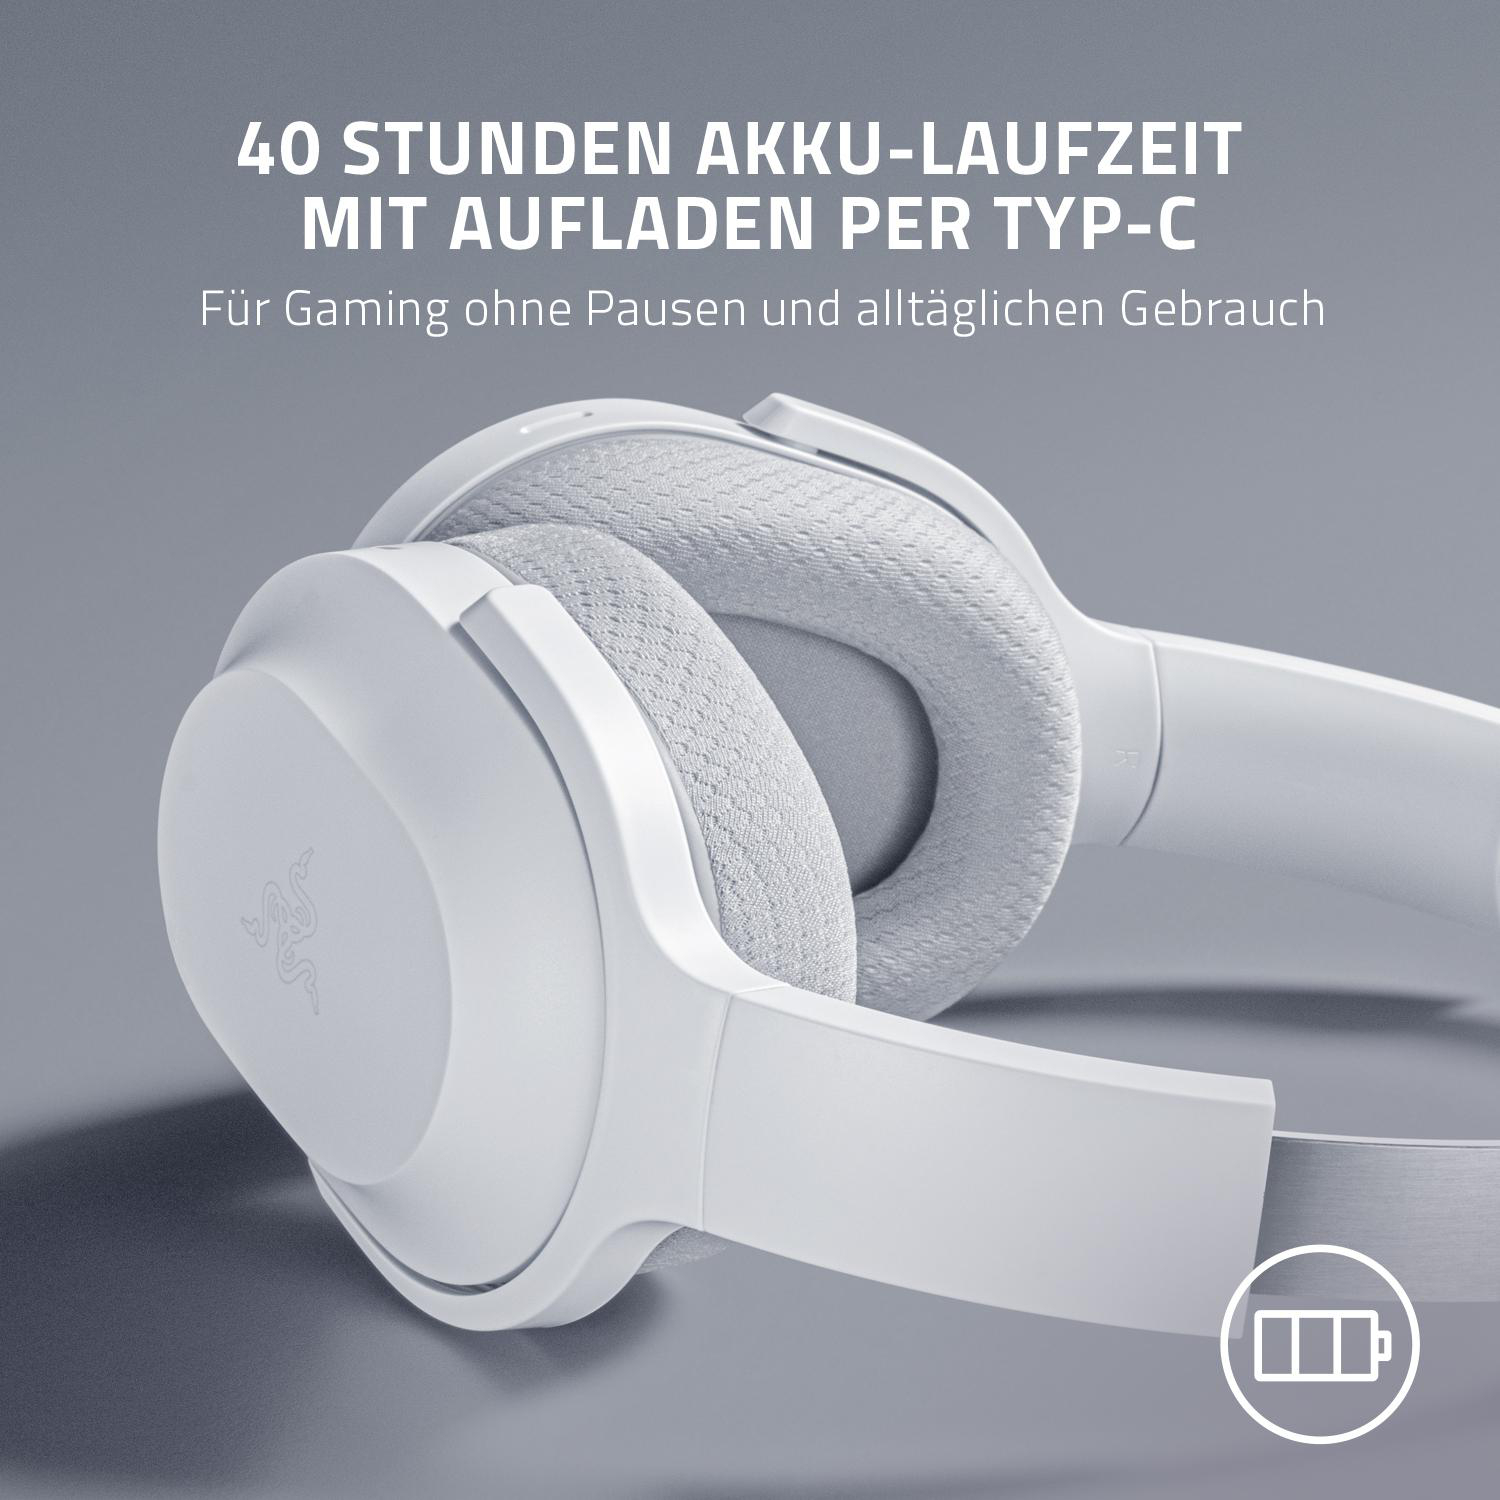 RAZER Barracuda - Mercury Weiß, Weiß Bluetooth Headset Mercury Over-ear Gaming